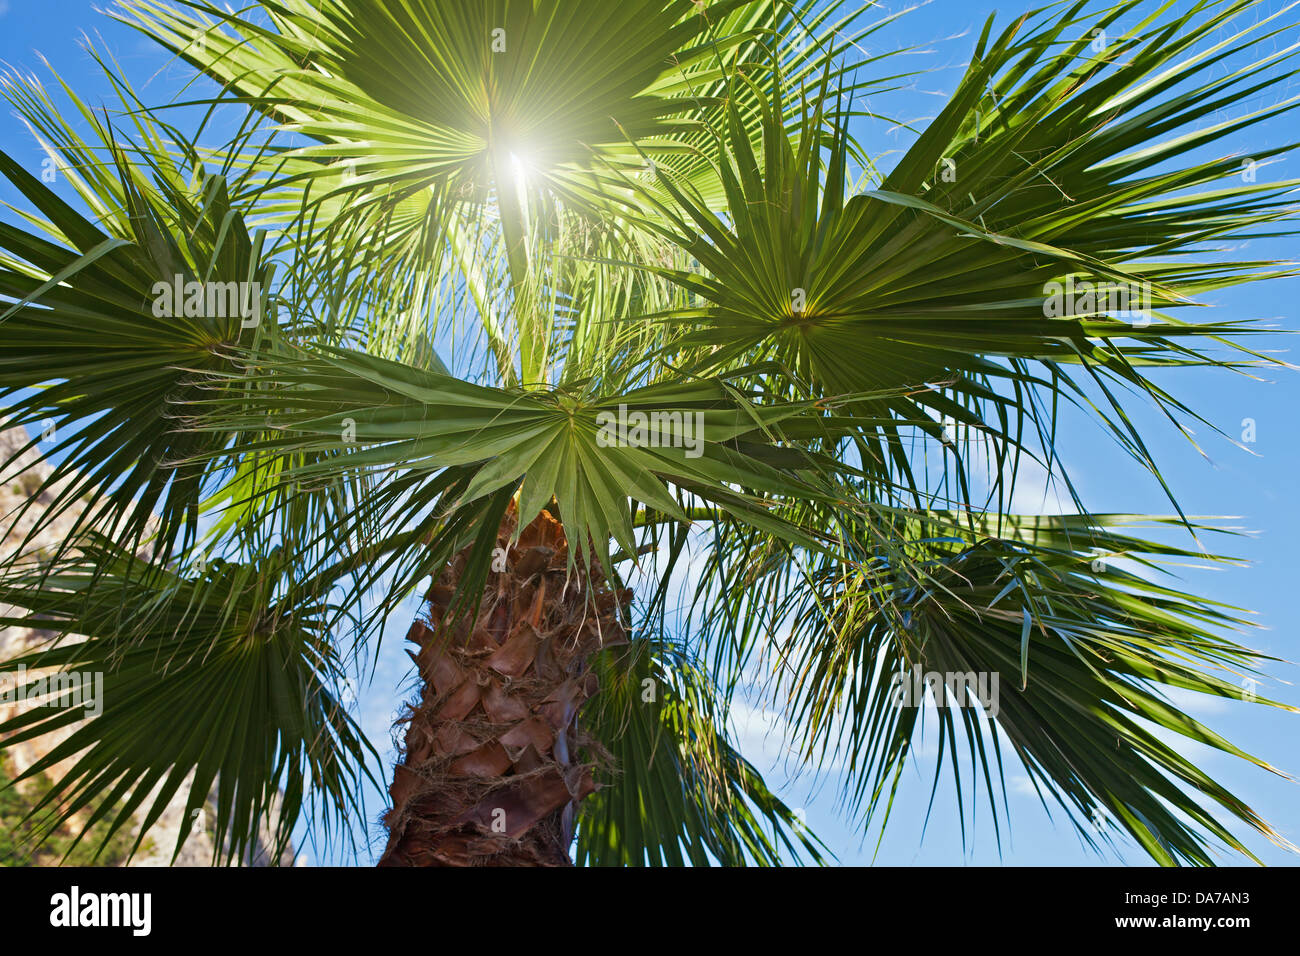 Palm-Baum und Sonne Strahlen gegen blauen Himmel Stockfoto